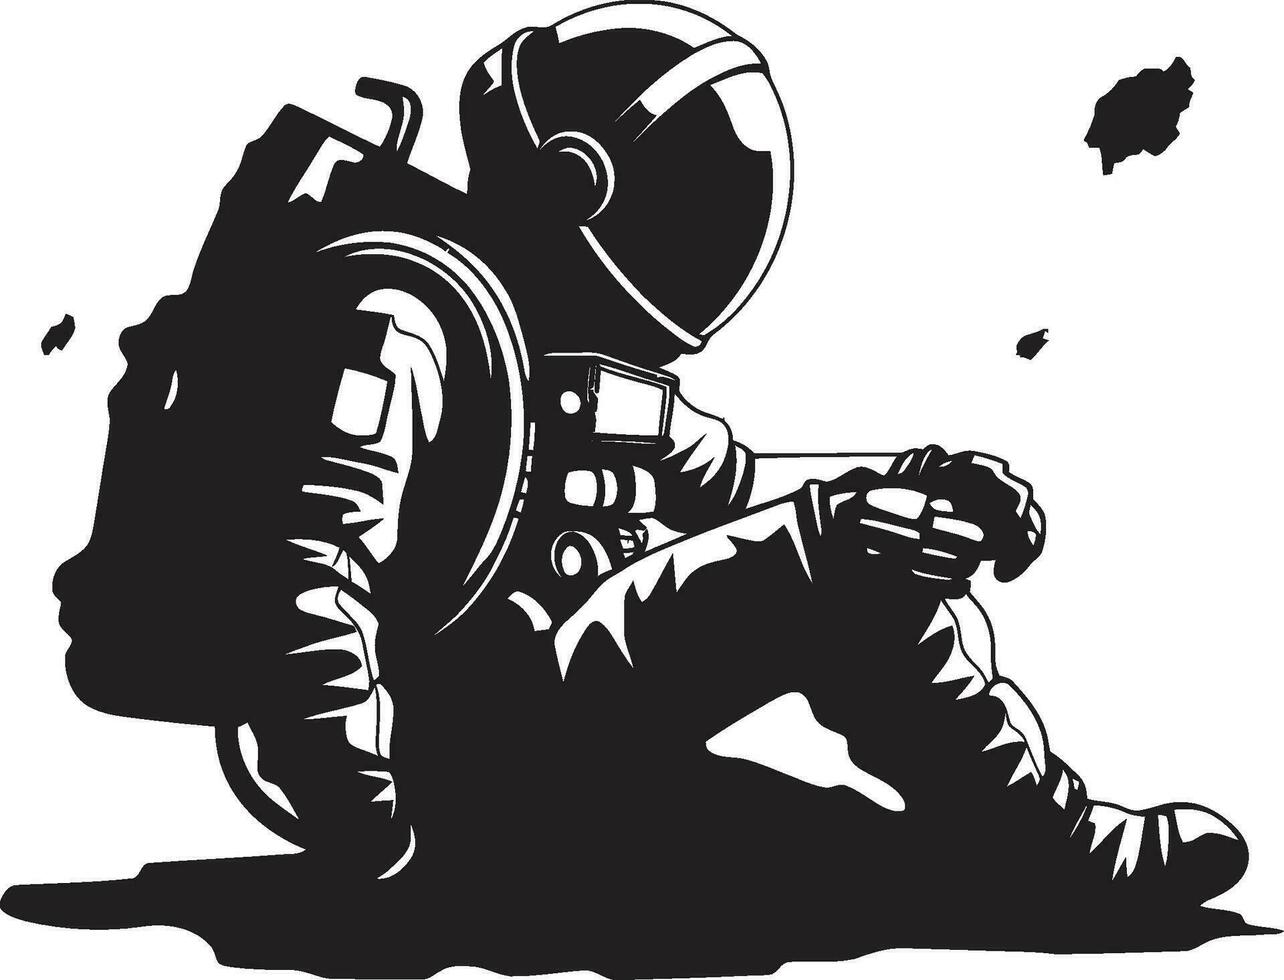 estelar navegador vetor traje espacial ícone celestial explorador astronauta emblemático Projeto